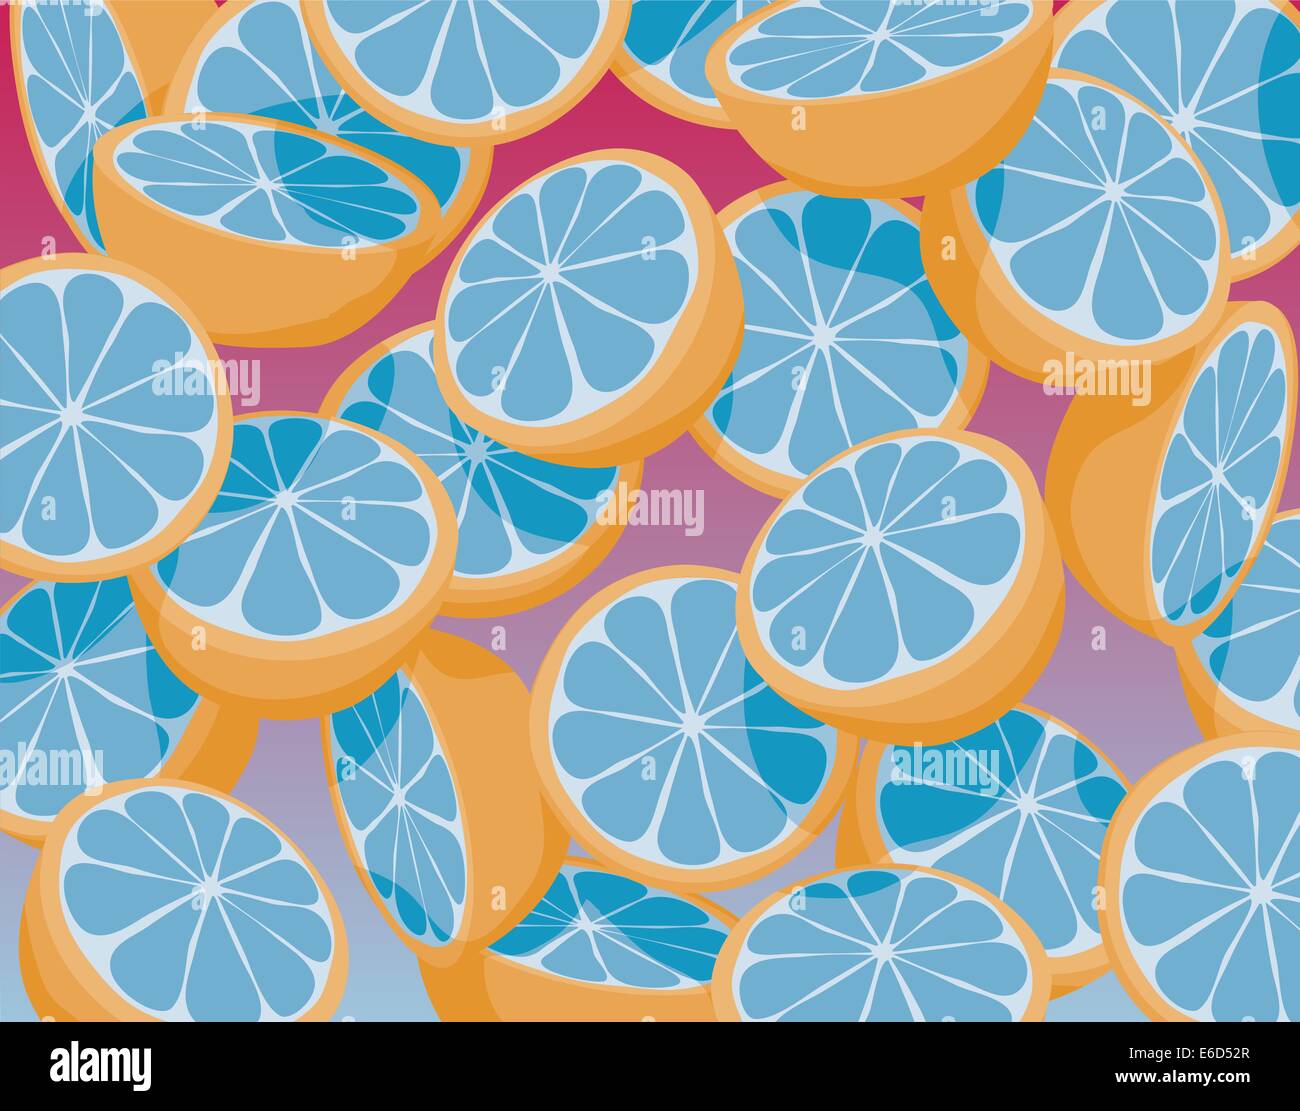 Bearbeitbares Vektor-Illustration des Fallens in Scheiben geschnitten blauen Orangen Stock Vektor